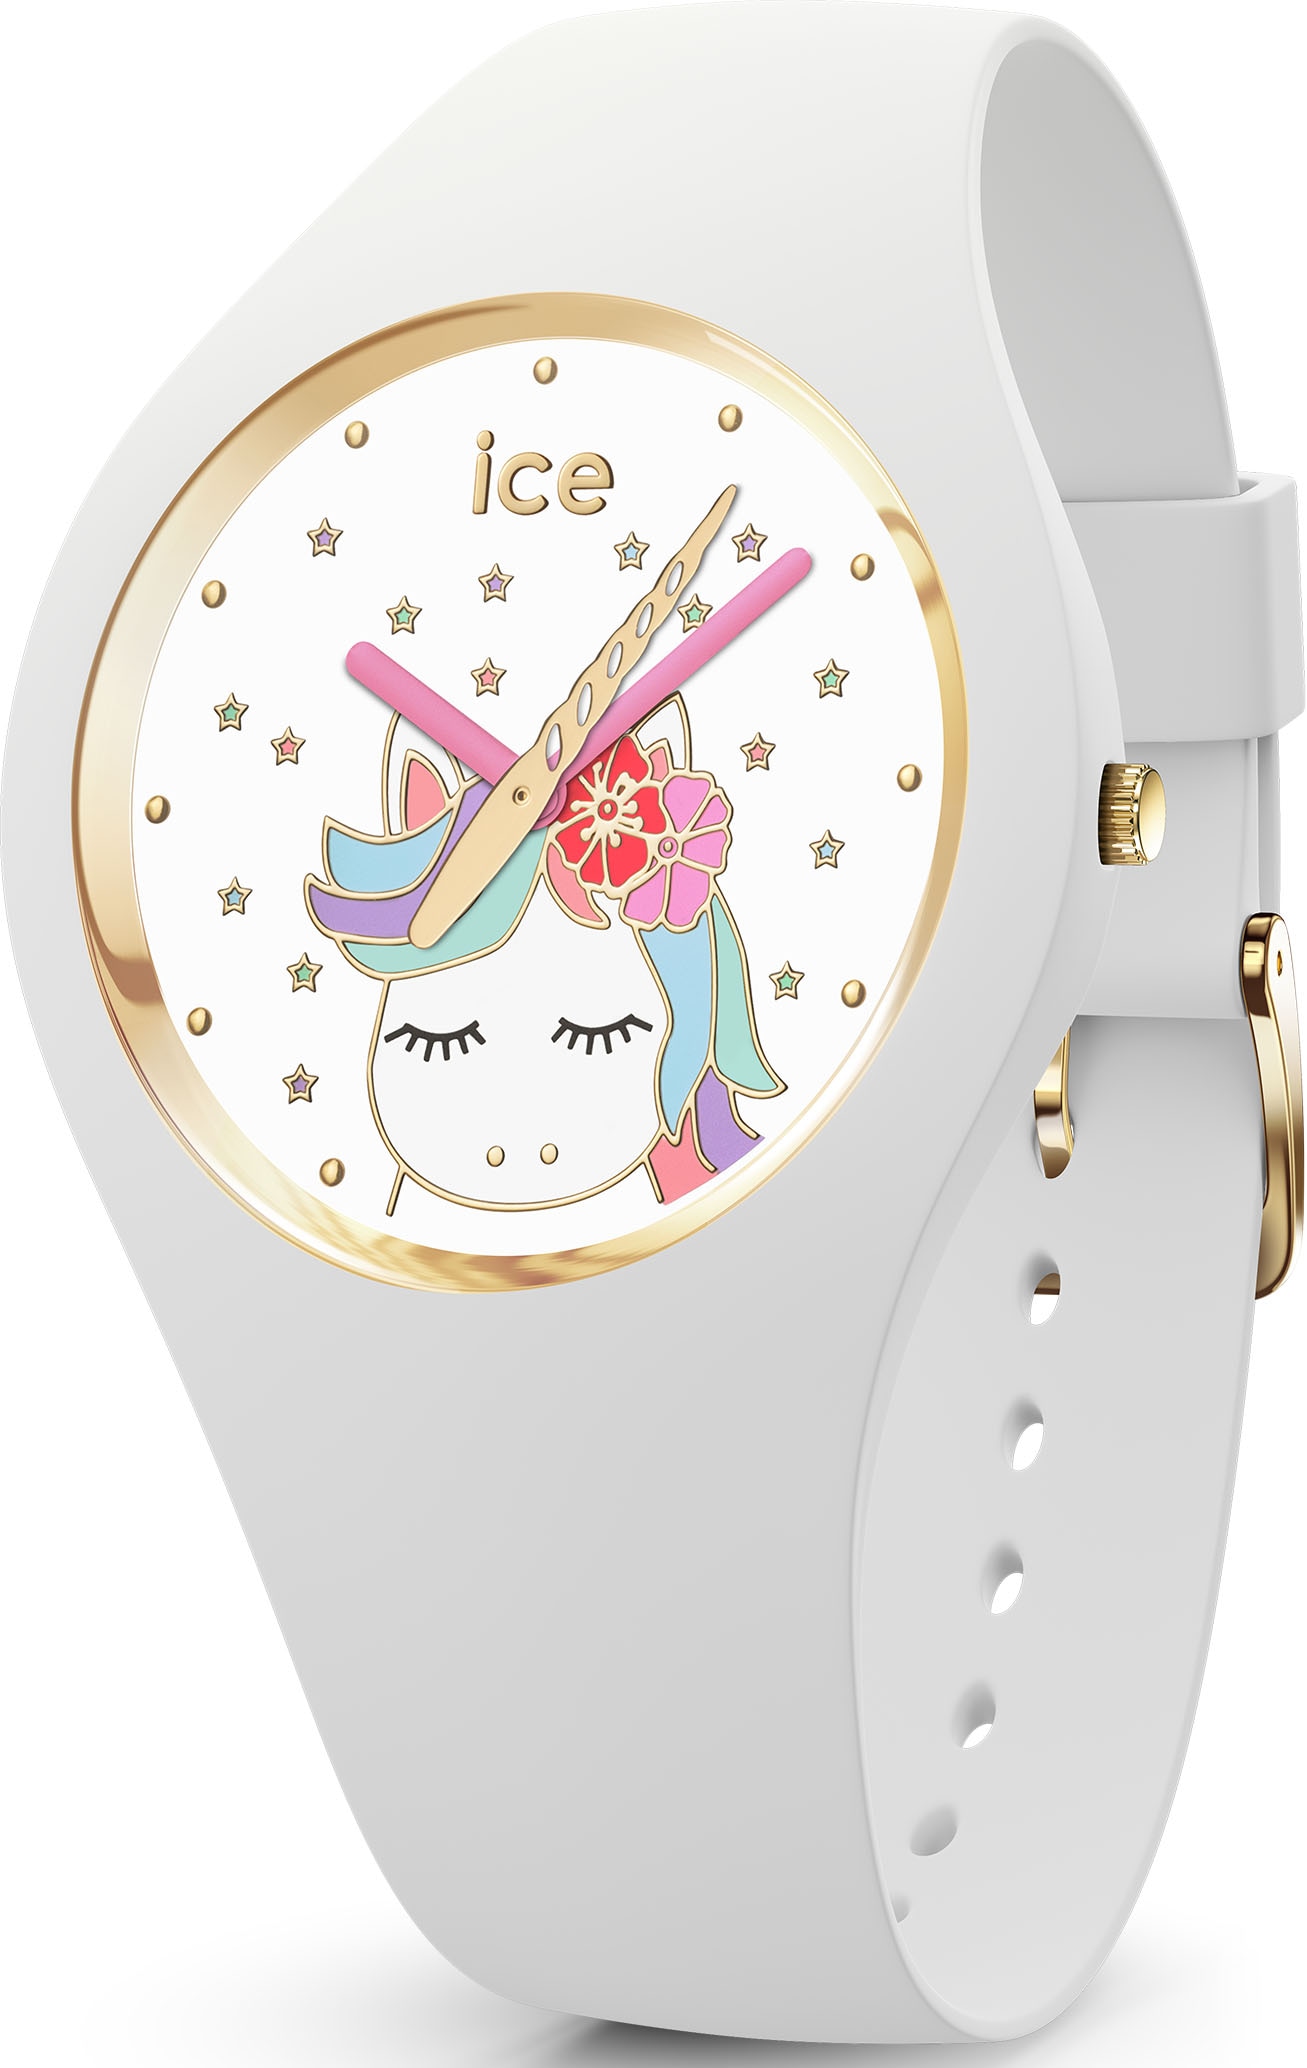 »ICE ice-watch Quarzuhr ideal Geschenk 016721«, bei auch fantasia, als